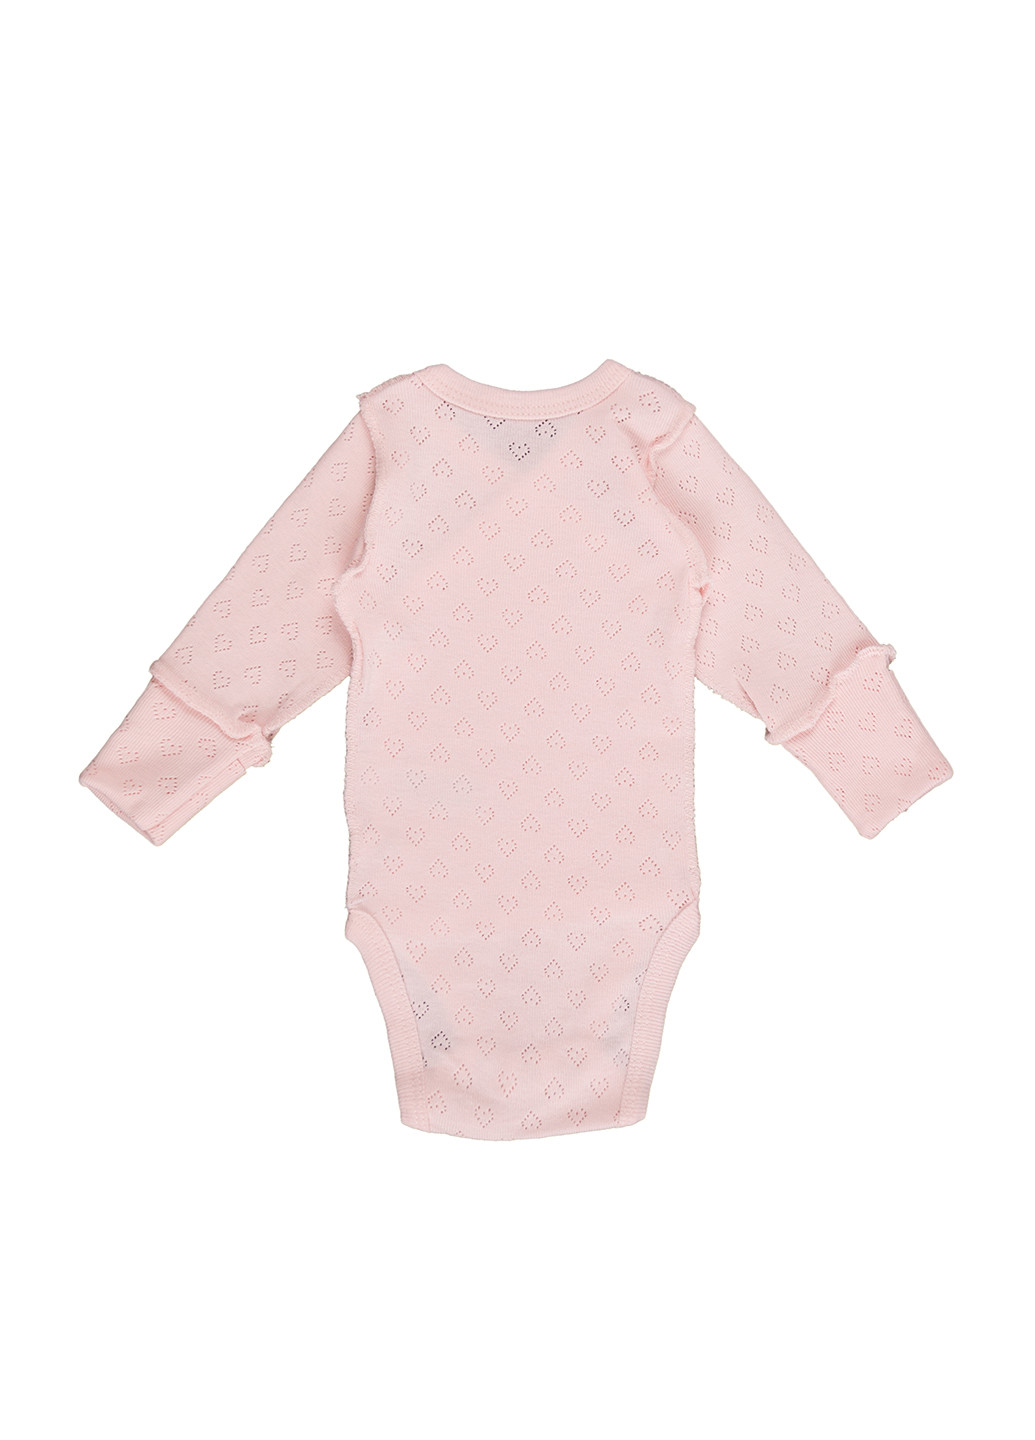 Боди для новорожденных длинный рукав Фламинго Текстиль рисунки розовые домашние хлопок